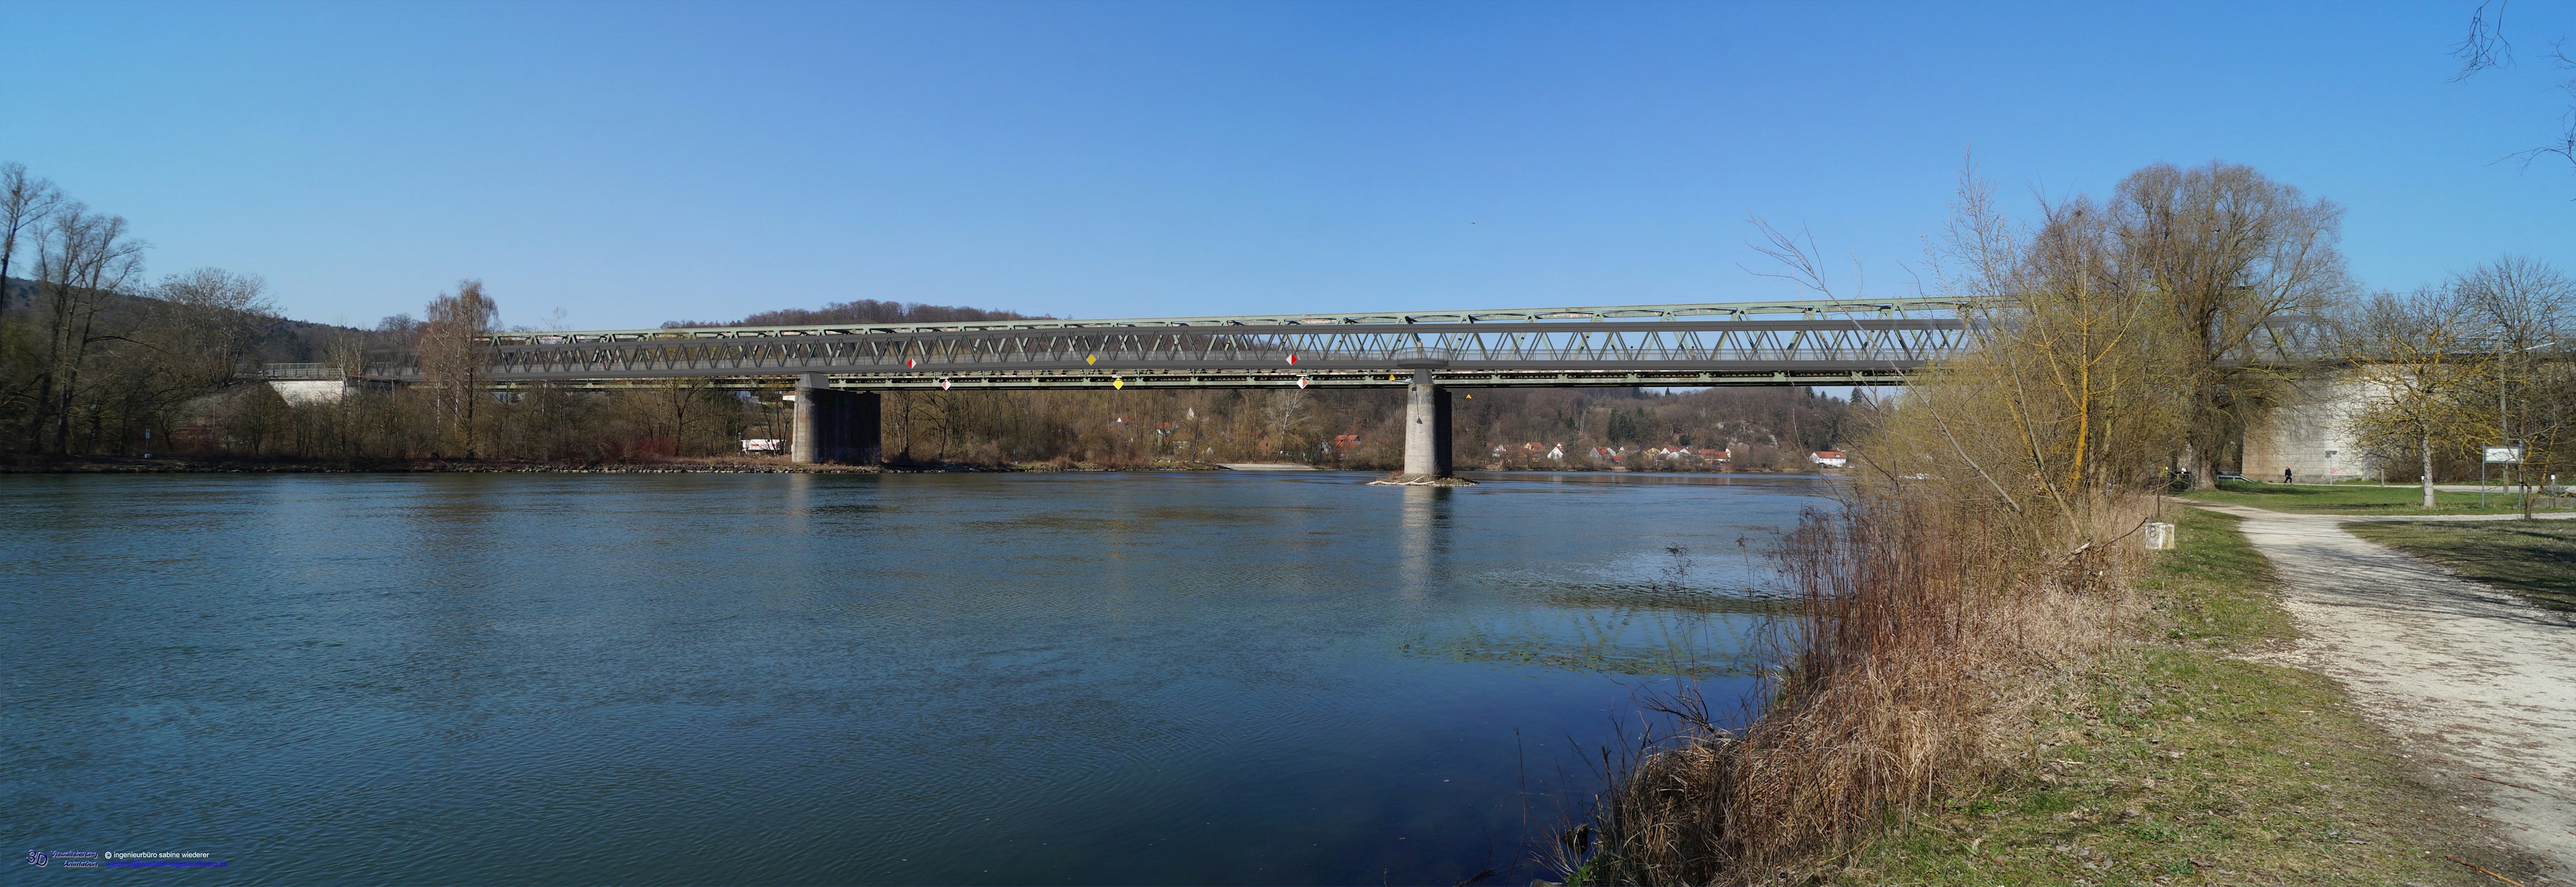 Geh- und Radwegbrücke Sinzing - Regensburg